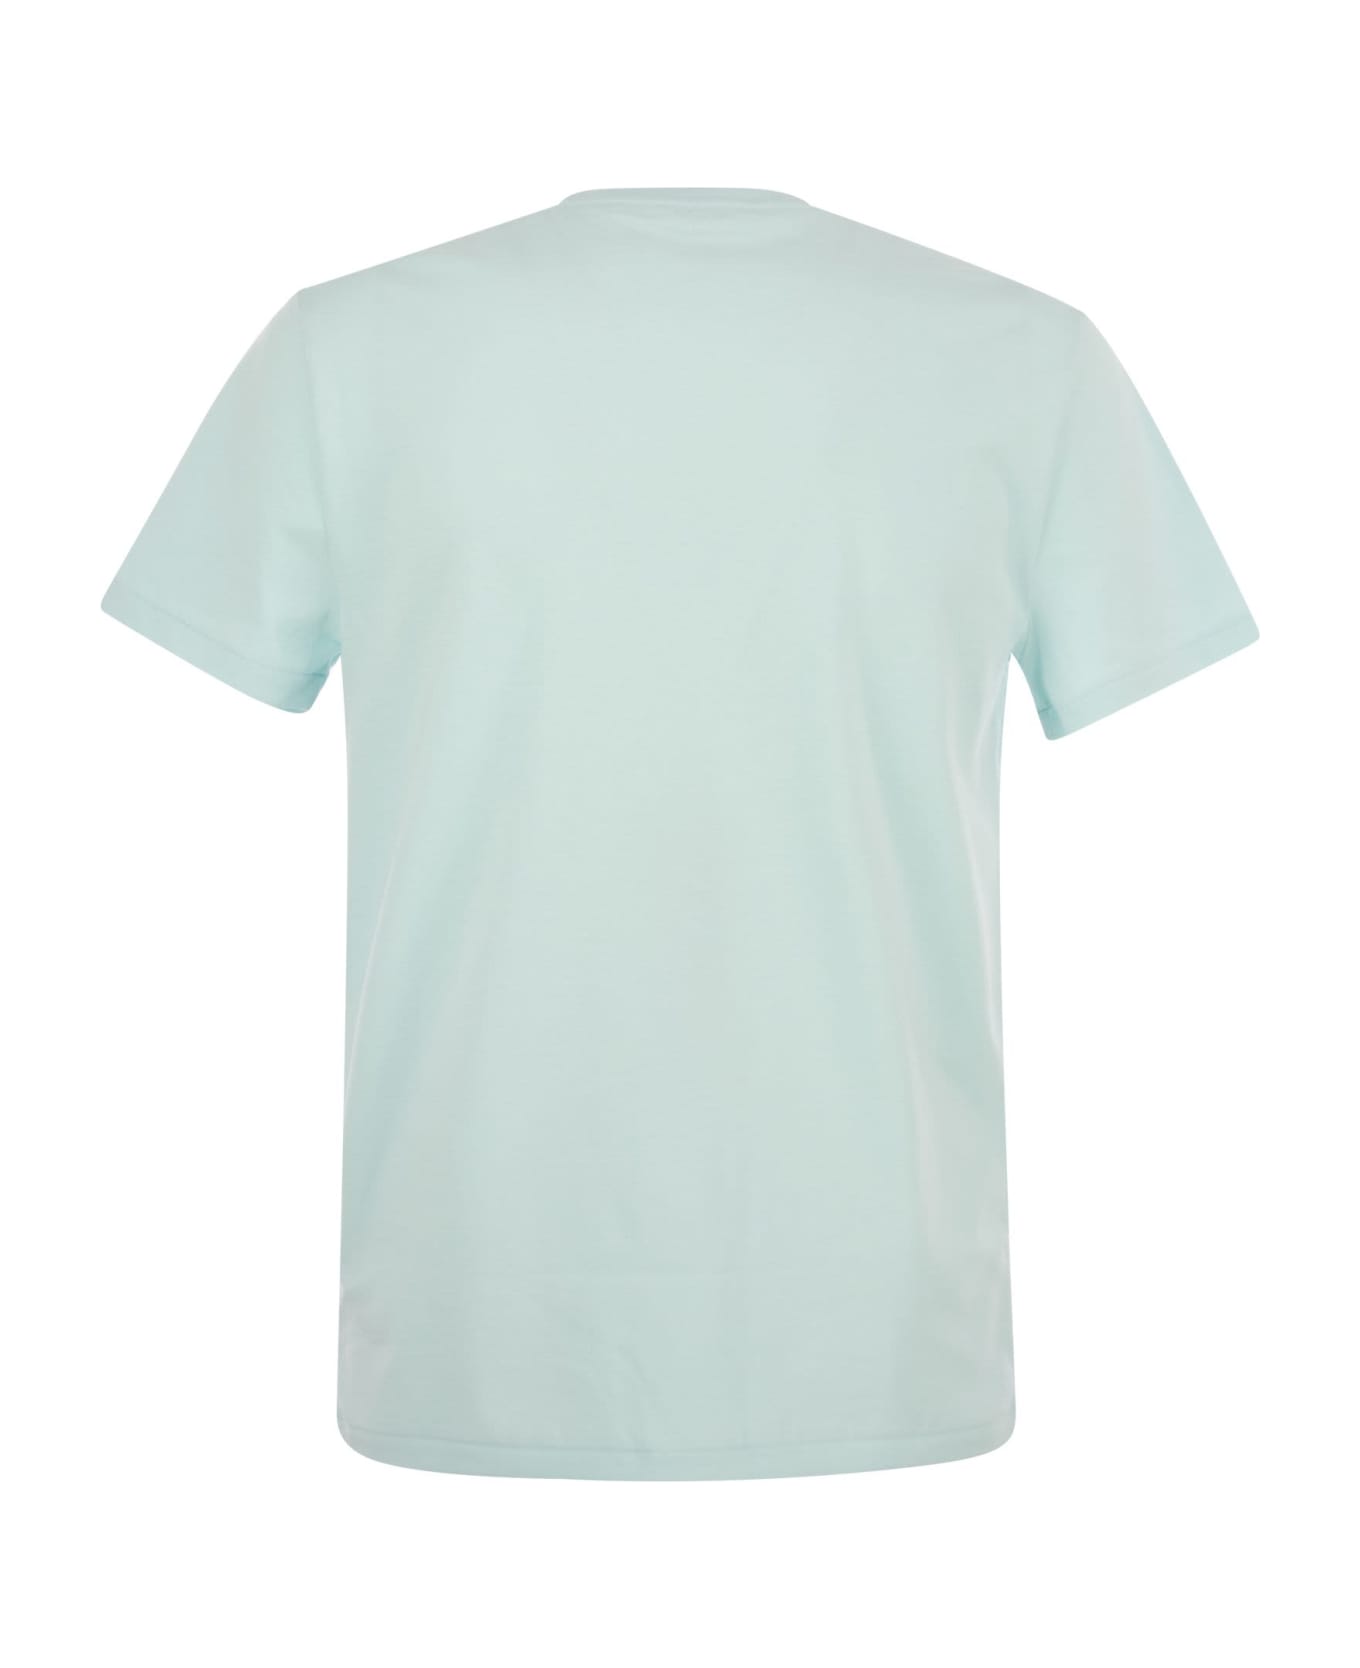 Polo Ralph Lauren Round Neck T-shirt - Light Blue シャツ